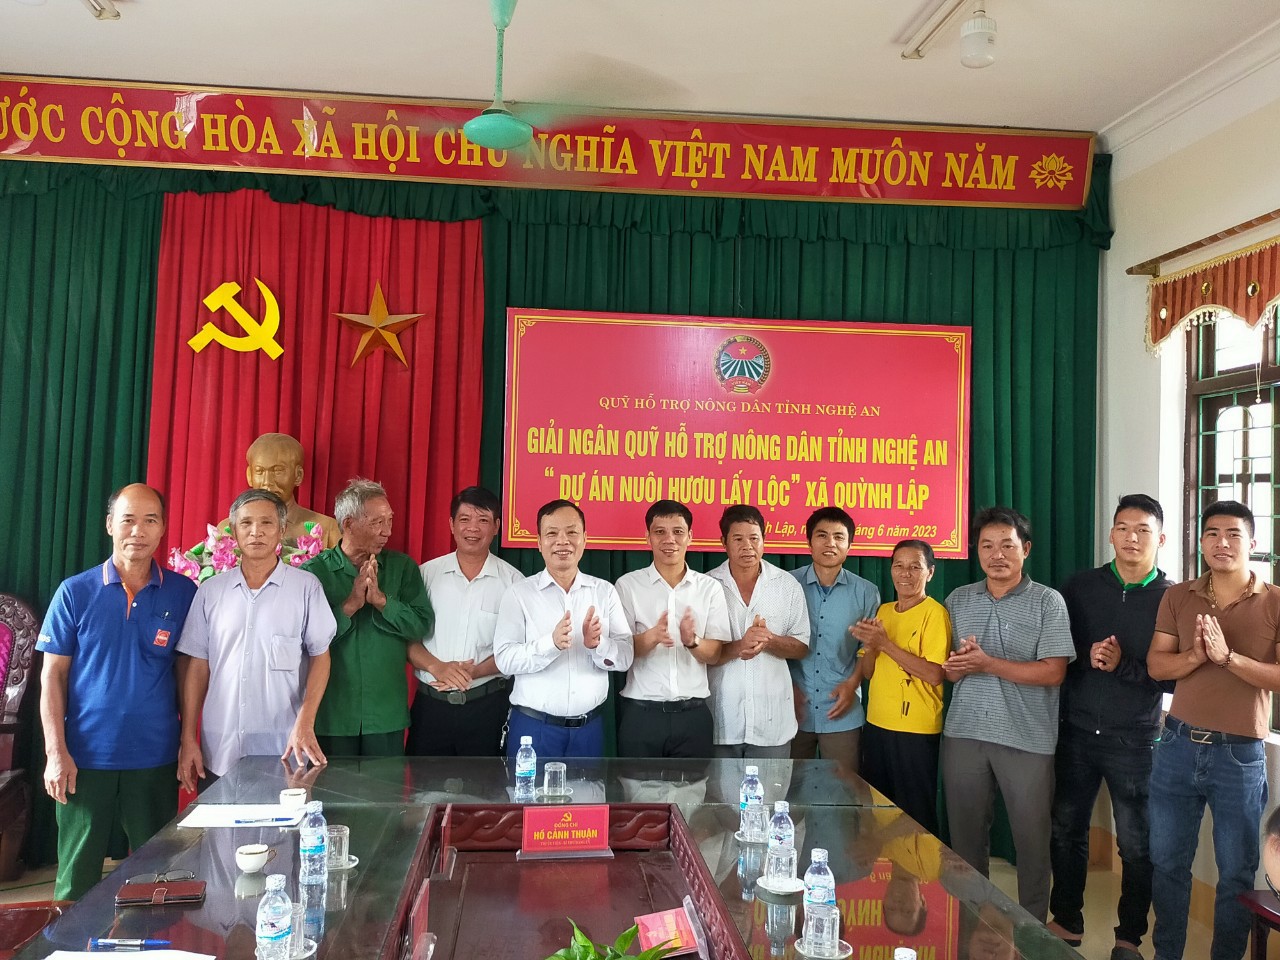 Giải ngân Quỹ hỗ trợ nông dân tỉnh Nghệ An "Dự án nuôi Hươu lấy lộc" xã Quỳnh Lập